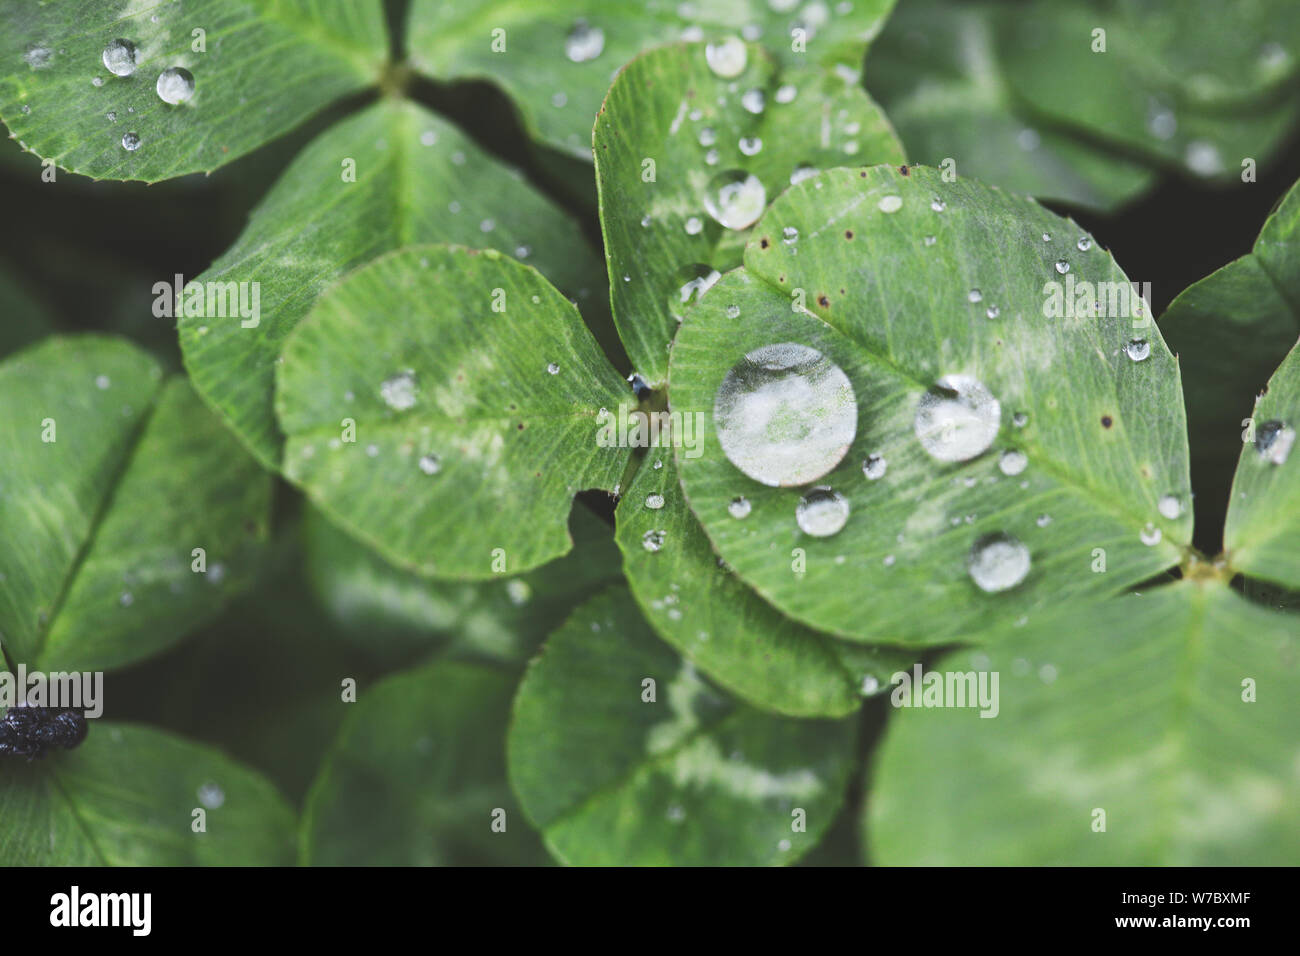 Close-up image of gouttes de pluie sur trois feuilles de trèfles durant un jour de pluie Banque D'Images